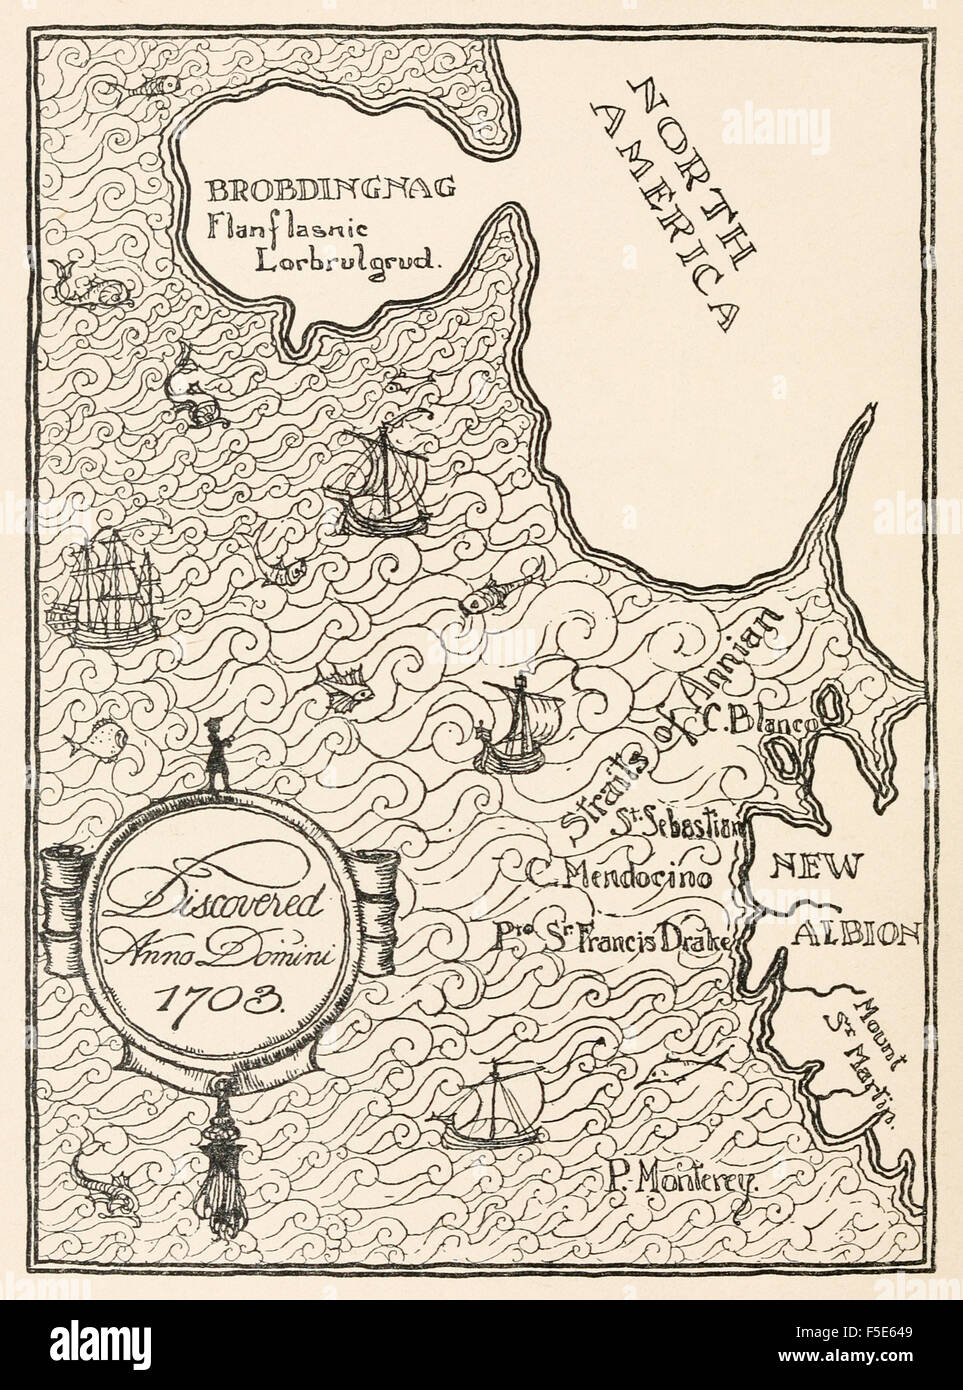 Karte von Brobdingnag, aus "Gullivers Reisen in Lilliput und Brobdingnag" von Jonathan Swift (1667-1745), Illustration von Percy Angelo Staynes (1879-1953). Siehe Beschreibung für mehr Informationen. Stockfoto